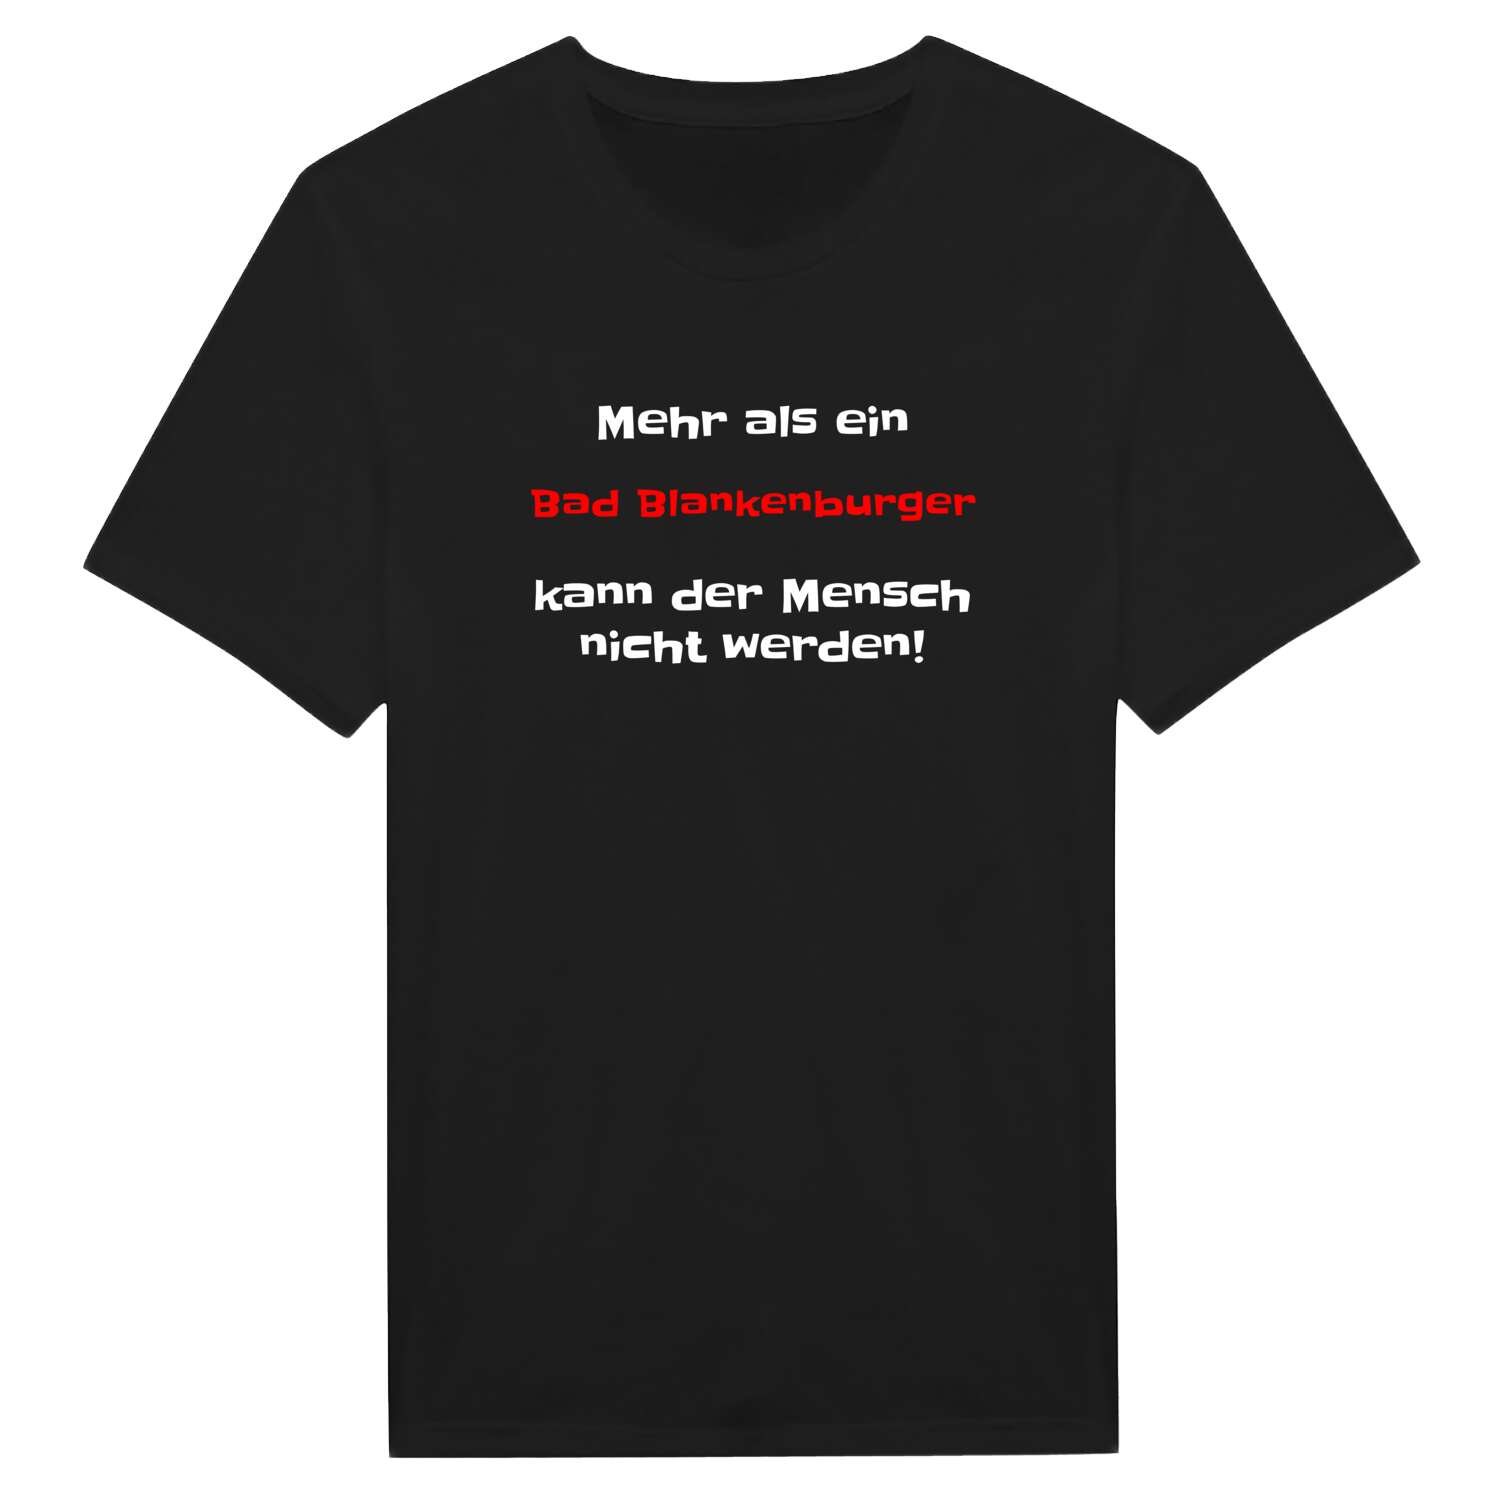 Bad Blankenburg T-Shirt »Mehr als ein«